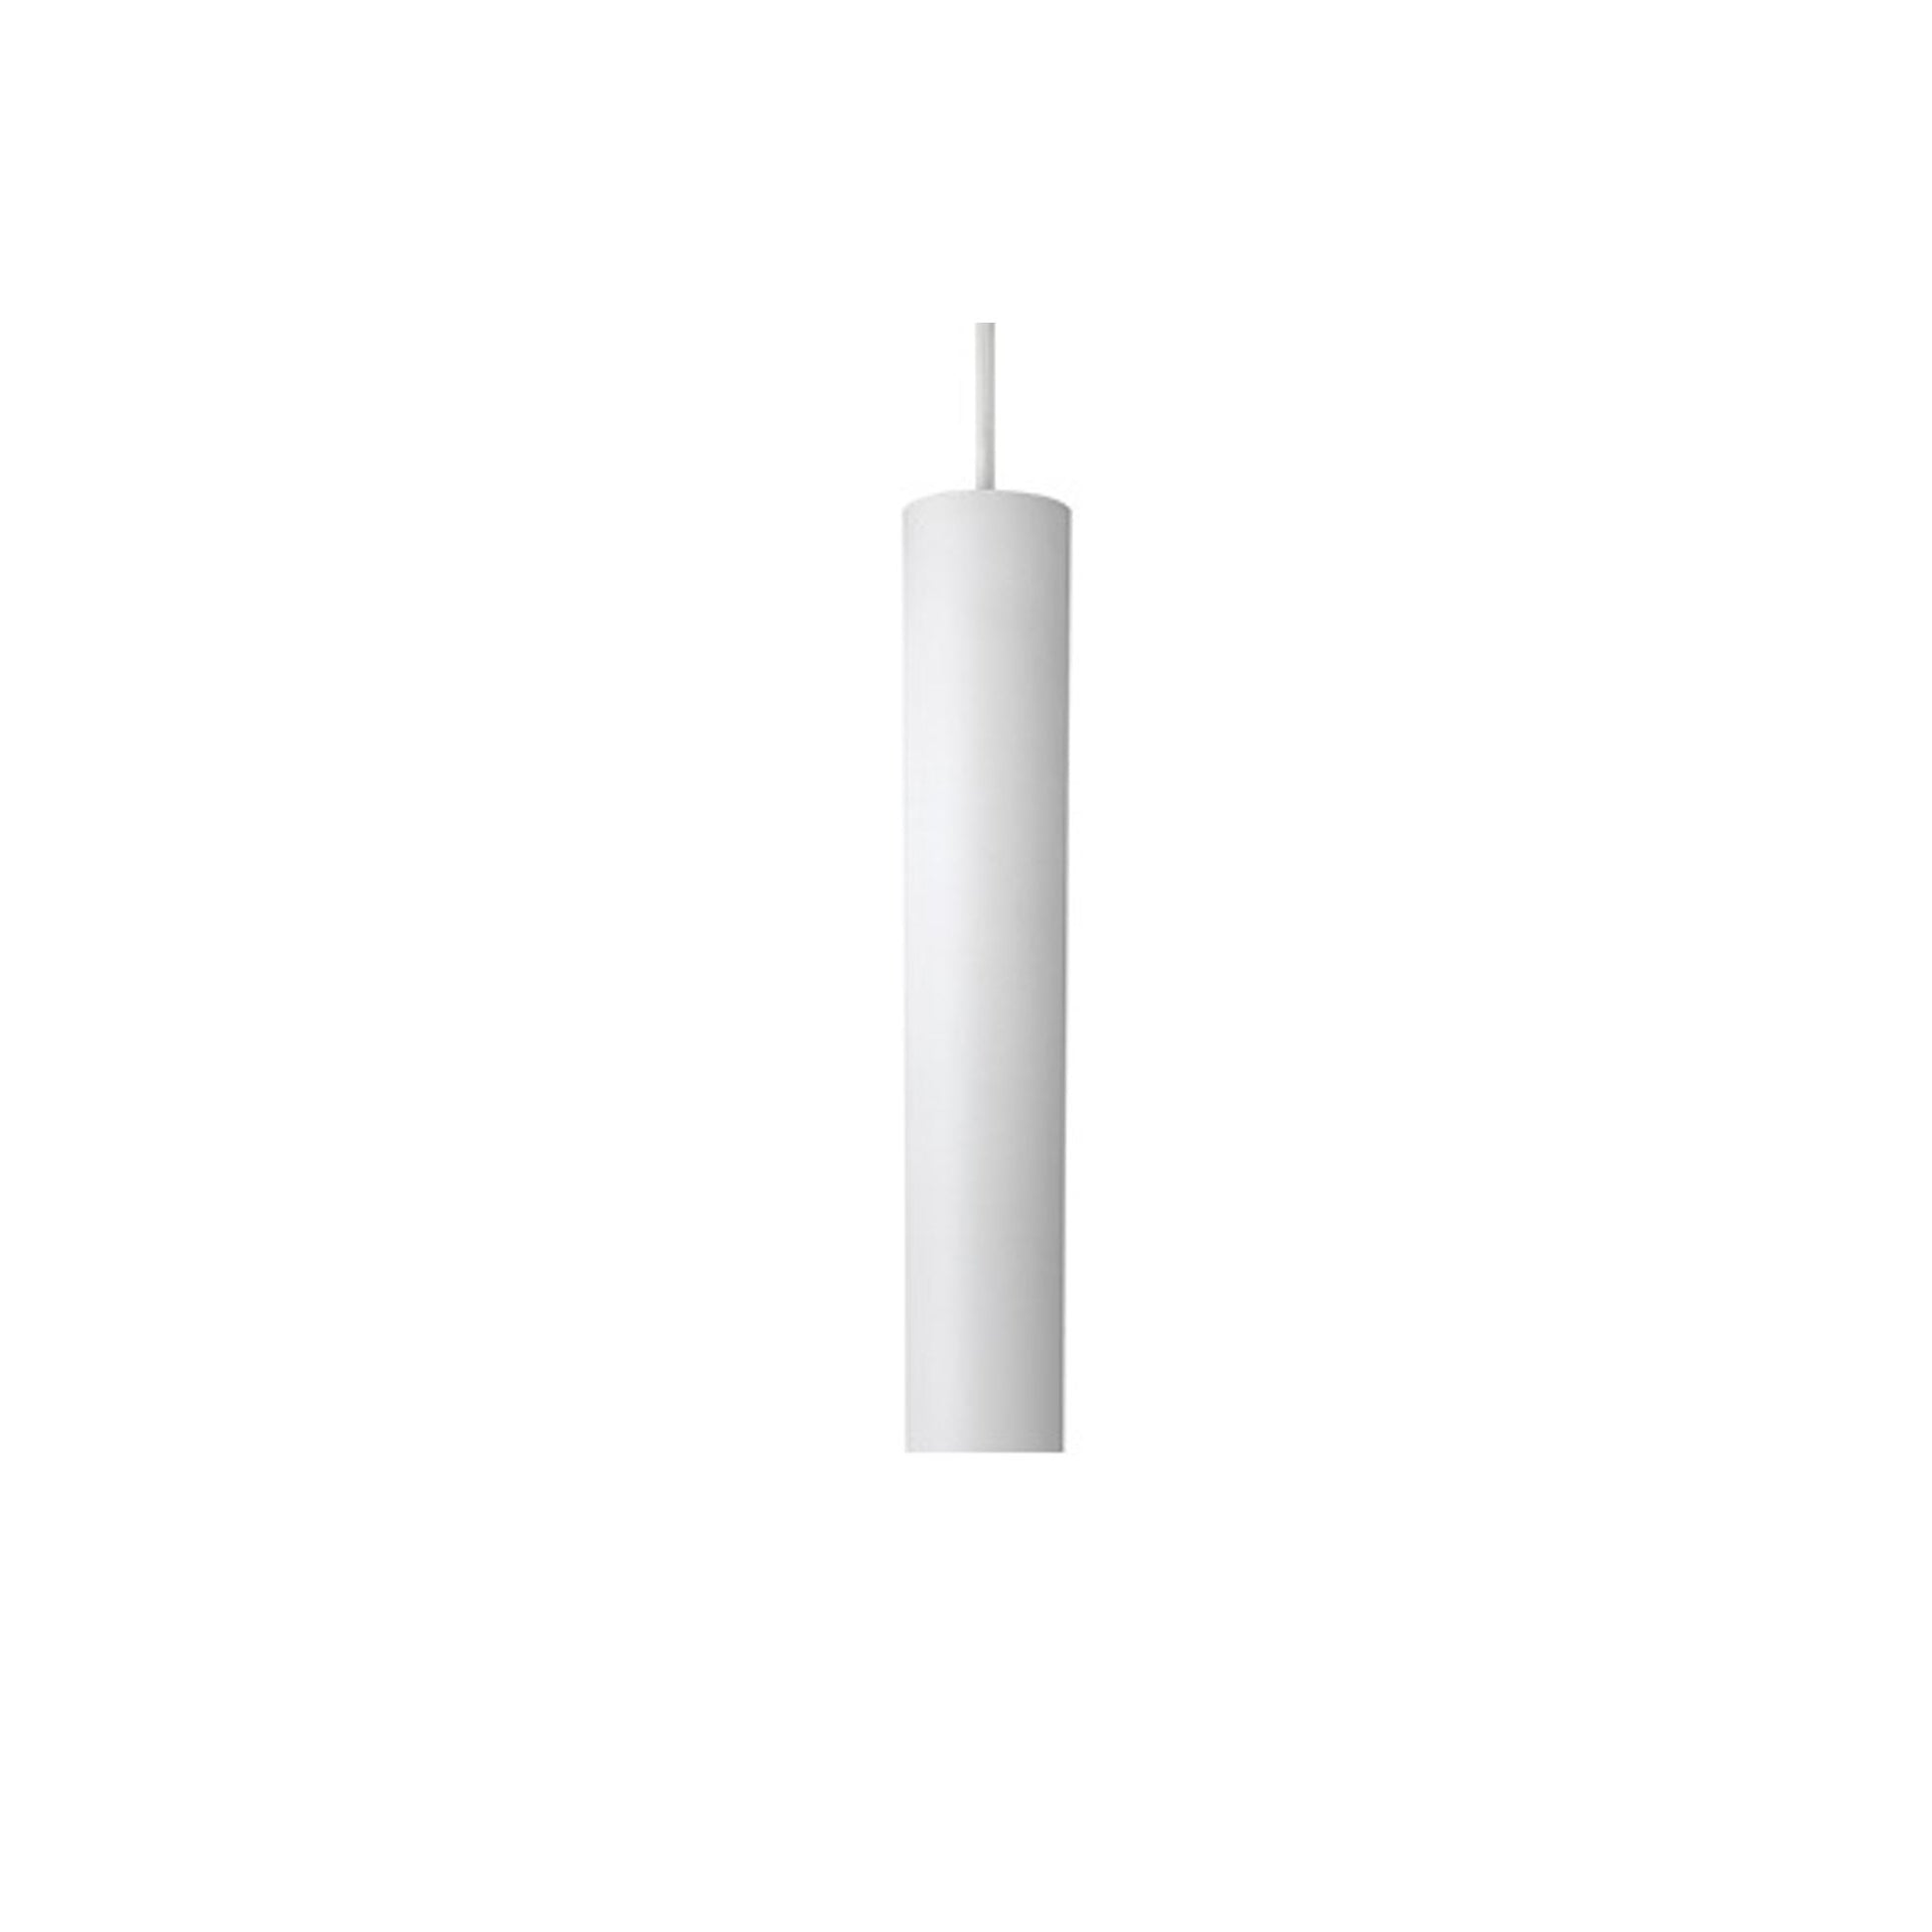 Tube Flex Pendant Lamp L35 by Antidark #White